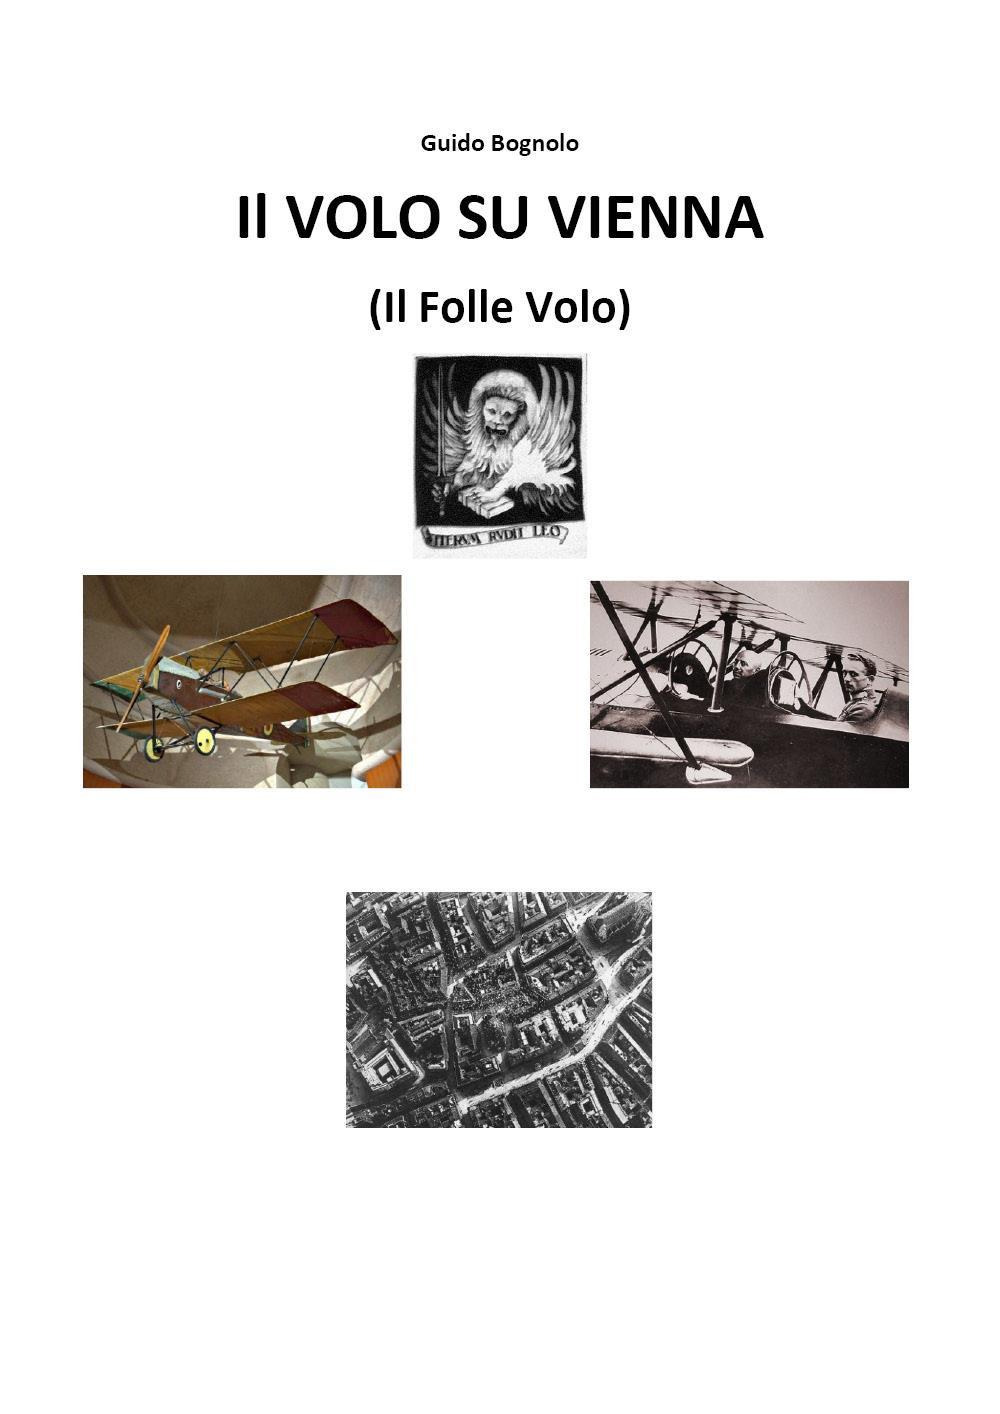 Libri Bognolo Guido - Volo Su Vienna (Il Folle Volo) NUOVO SIGILLATO, EDIZIONE DEL 07/10/2022 SUBITO DISPONIBILE